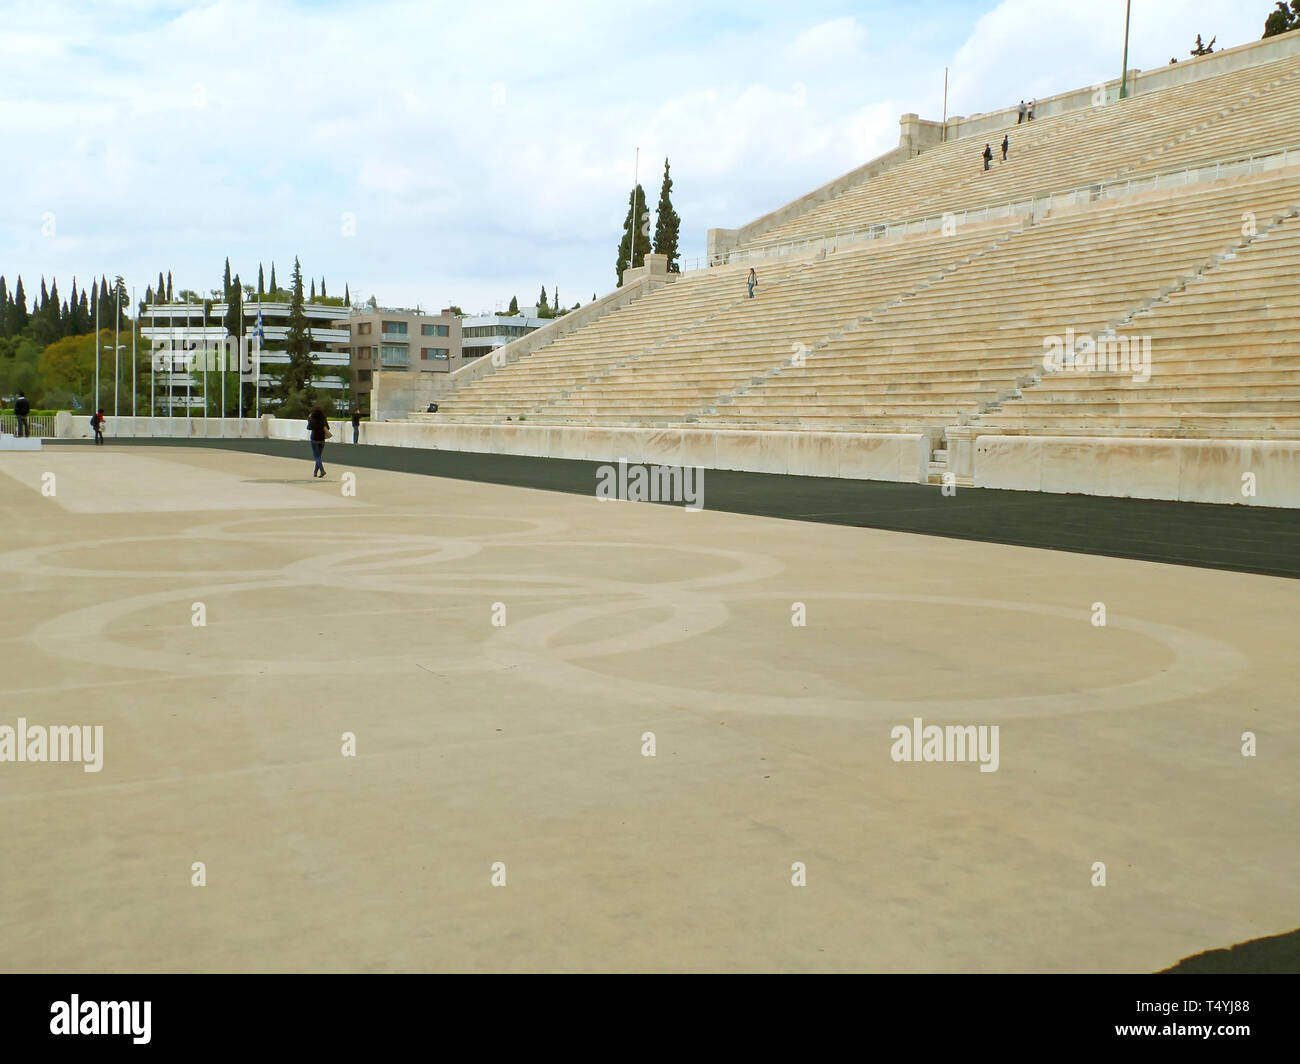 Stade Panathénaïque, site archéologique d'Athènes de la Grèce, où la flamme olympique Cérémonie de passation de la nation hôte a lieu Banque D'Images